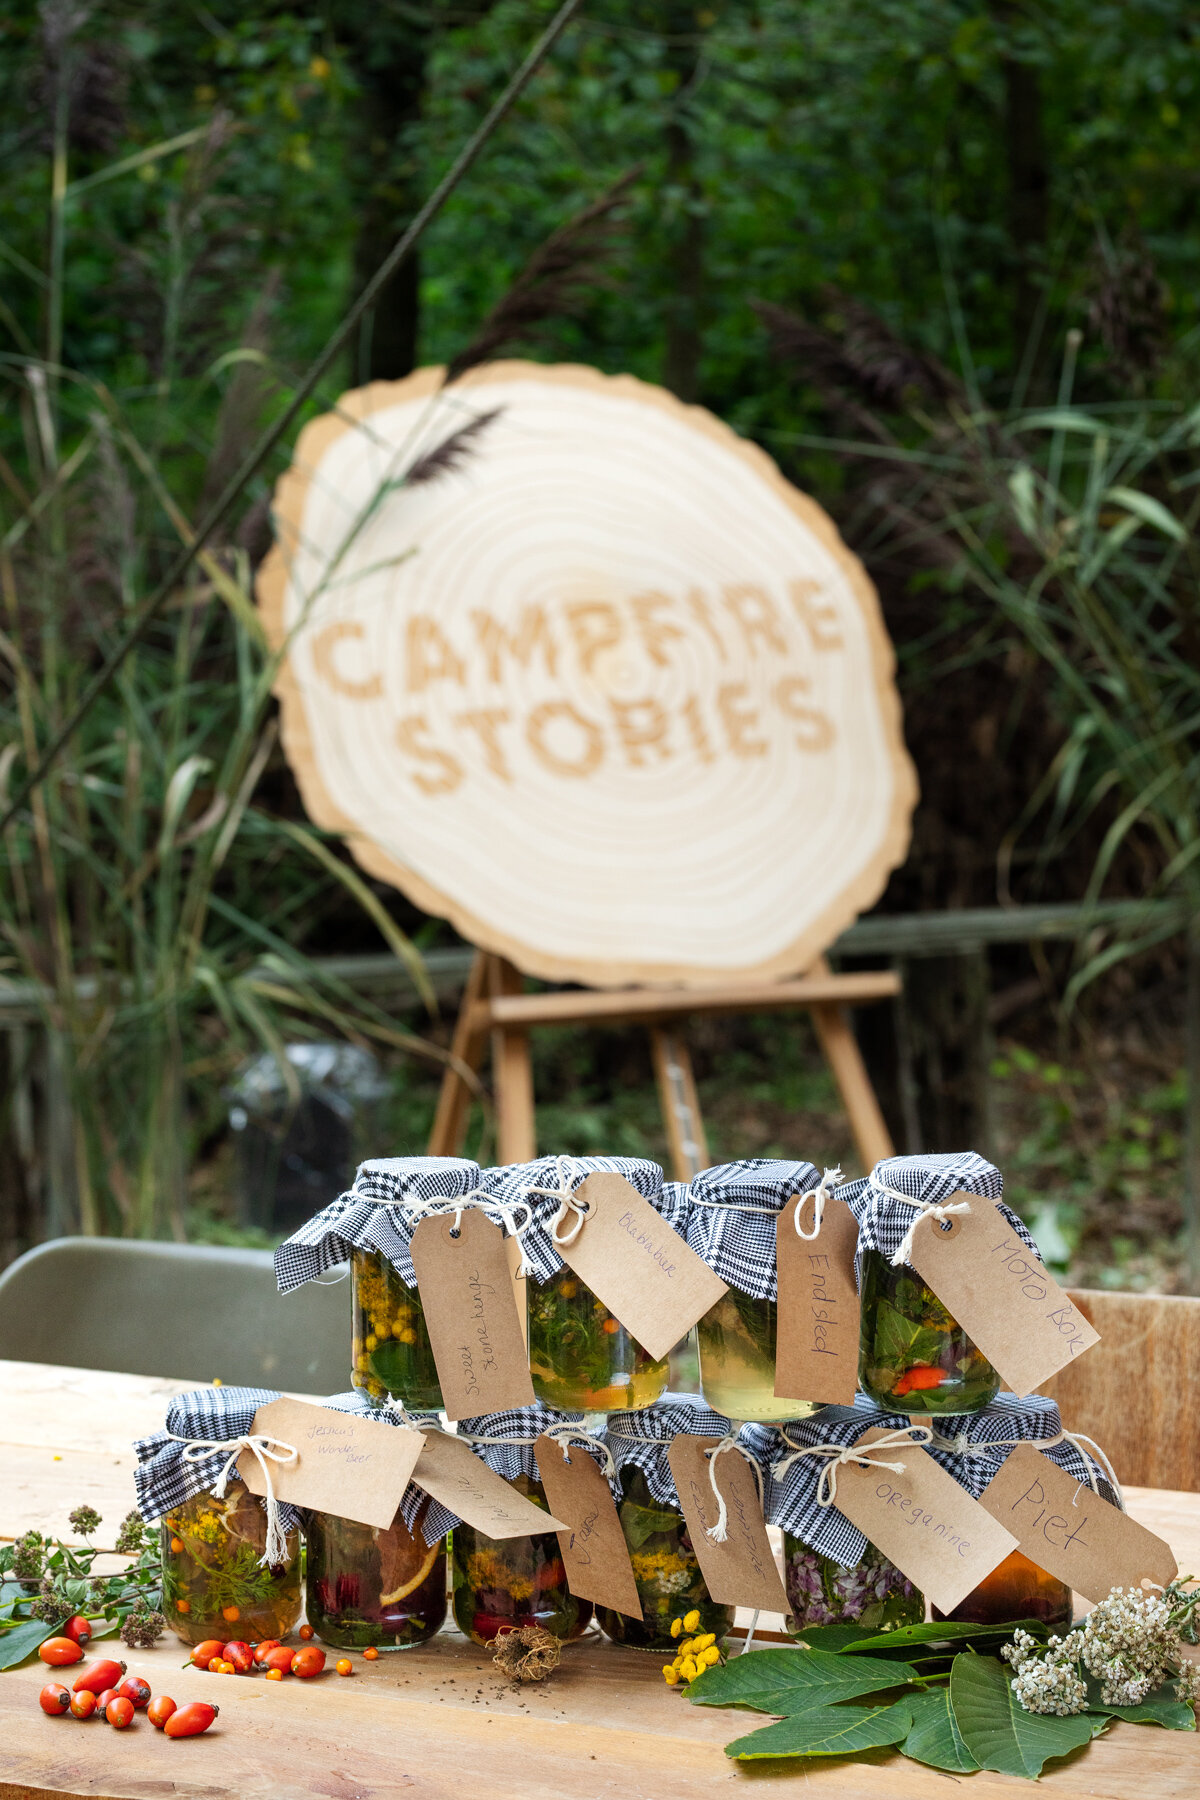 Maidie's Group - Fermented Drinks - Campfire Stories - Image by Jody Daunton - (@jodydaunton) 2.jpg